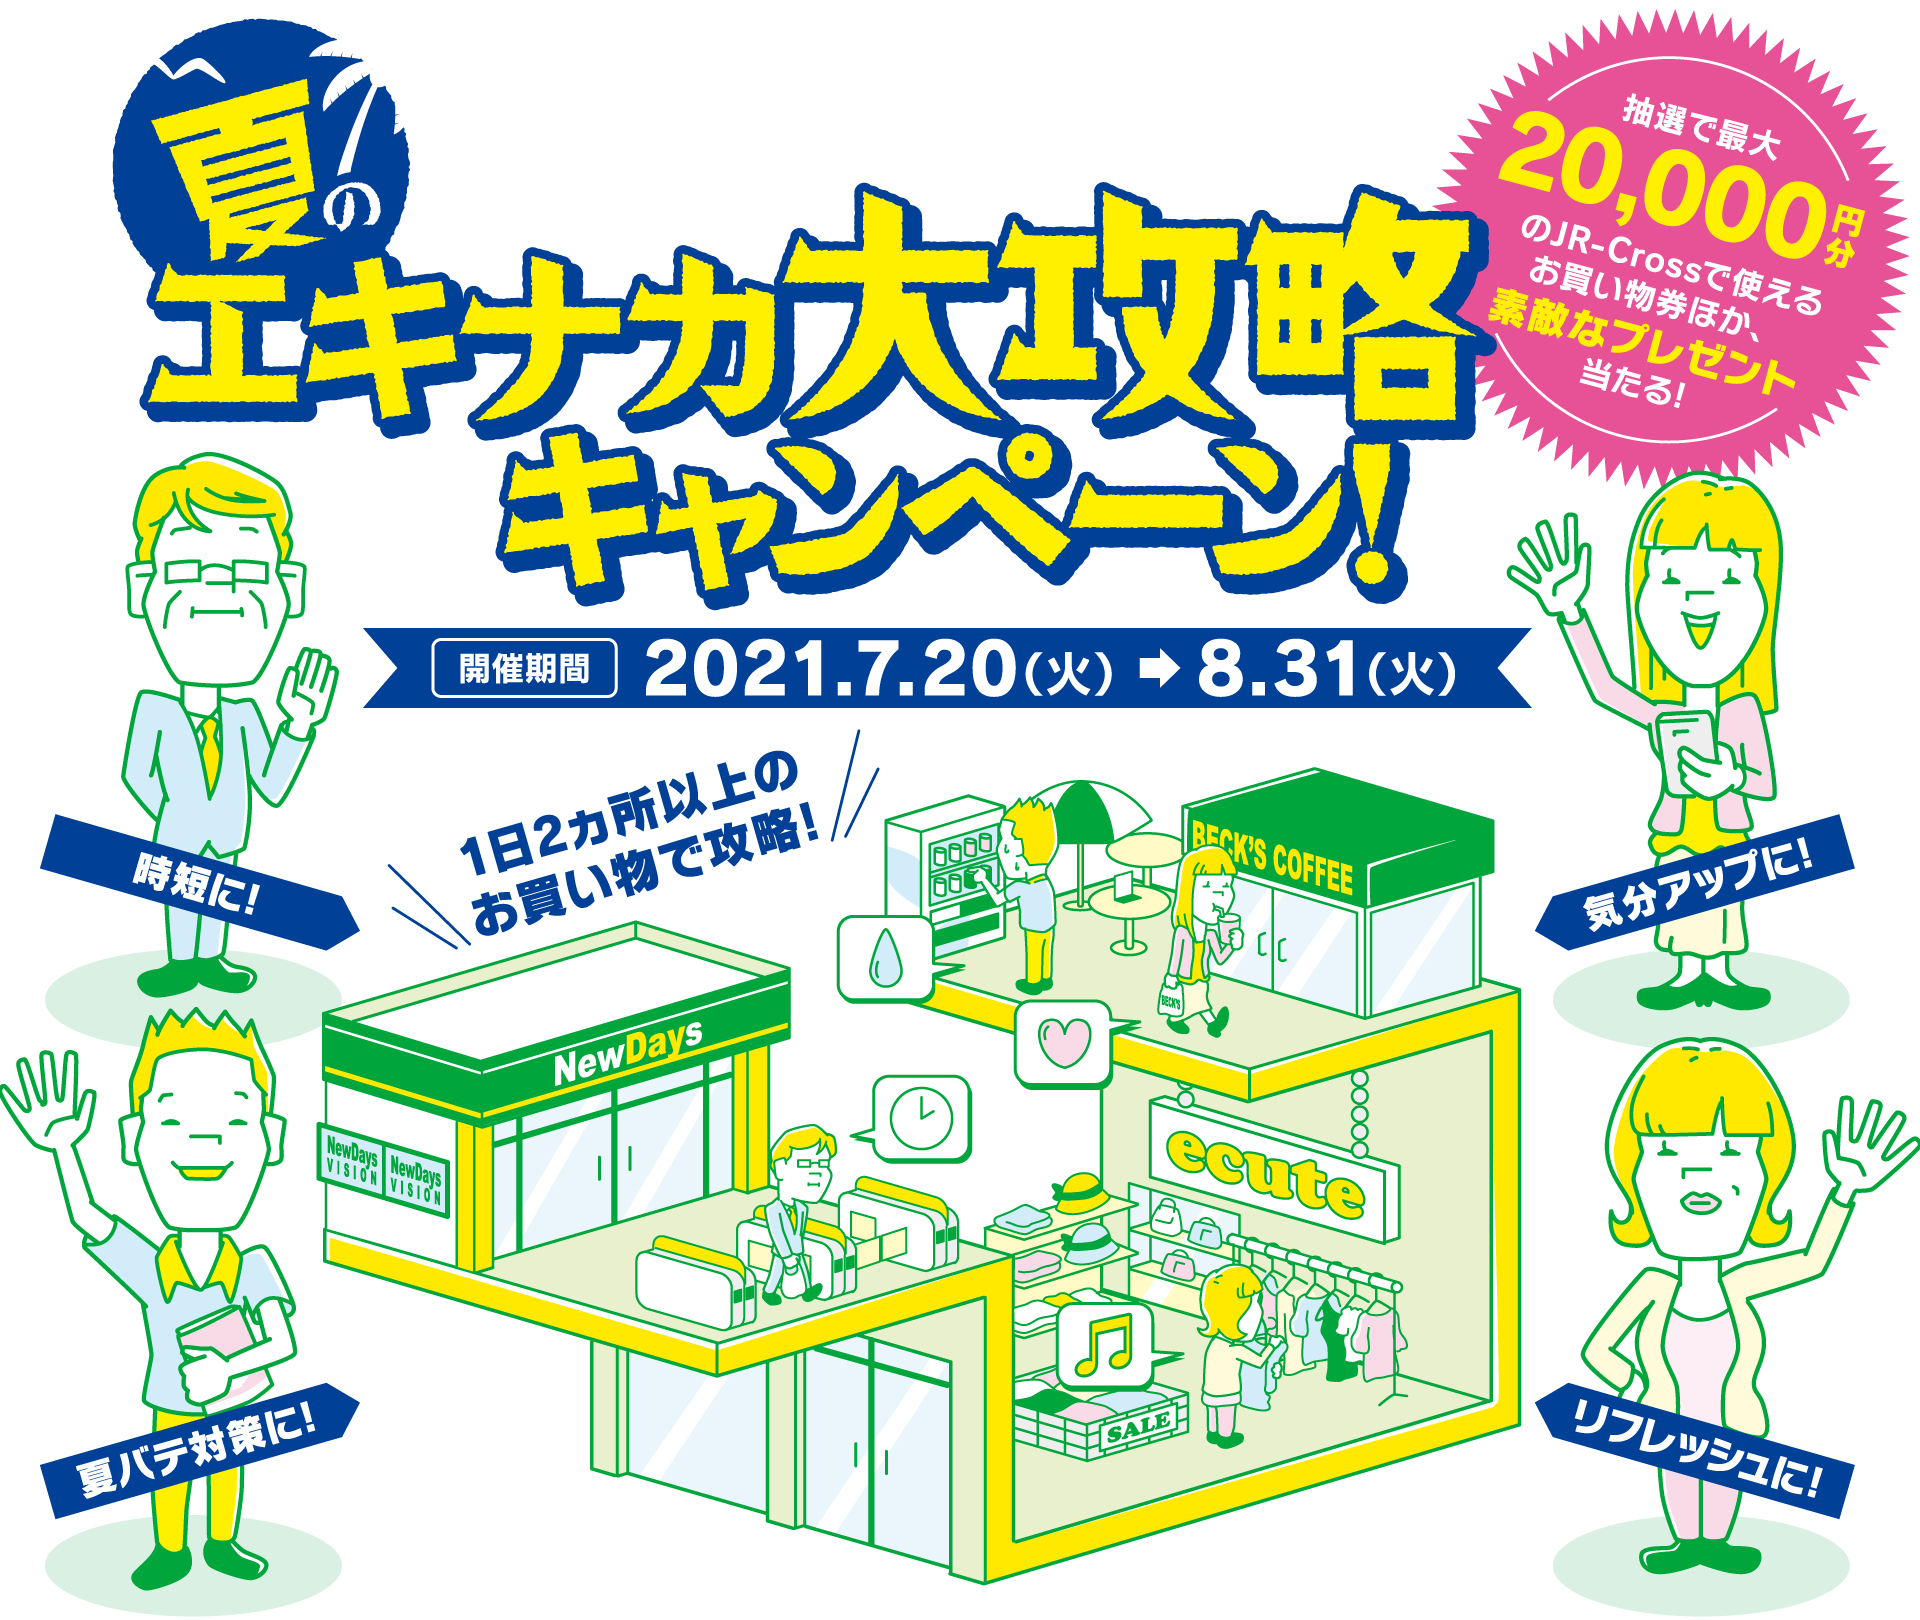 讓我們掌握站EKINAKA！EKINAKA Great Strategy Campaign 您可以通過抽籤在 JR-Cross 贏得價值高達 20,000 日元的購物，以及精美的禮物！舉辦期間 2021.7.20（星期二）→ 8.31（星期二）